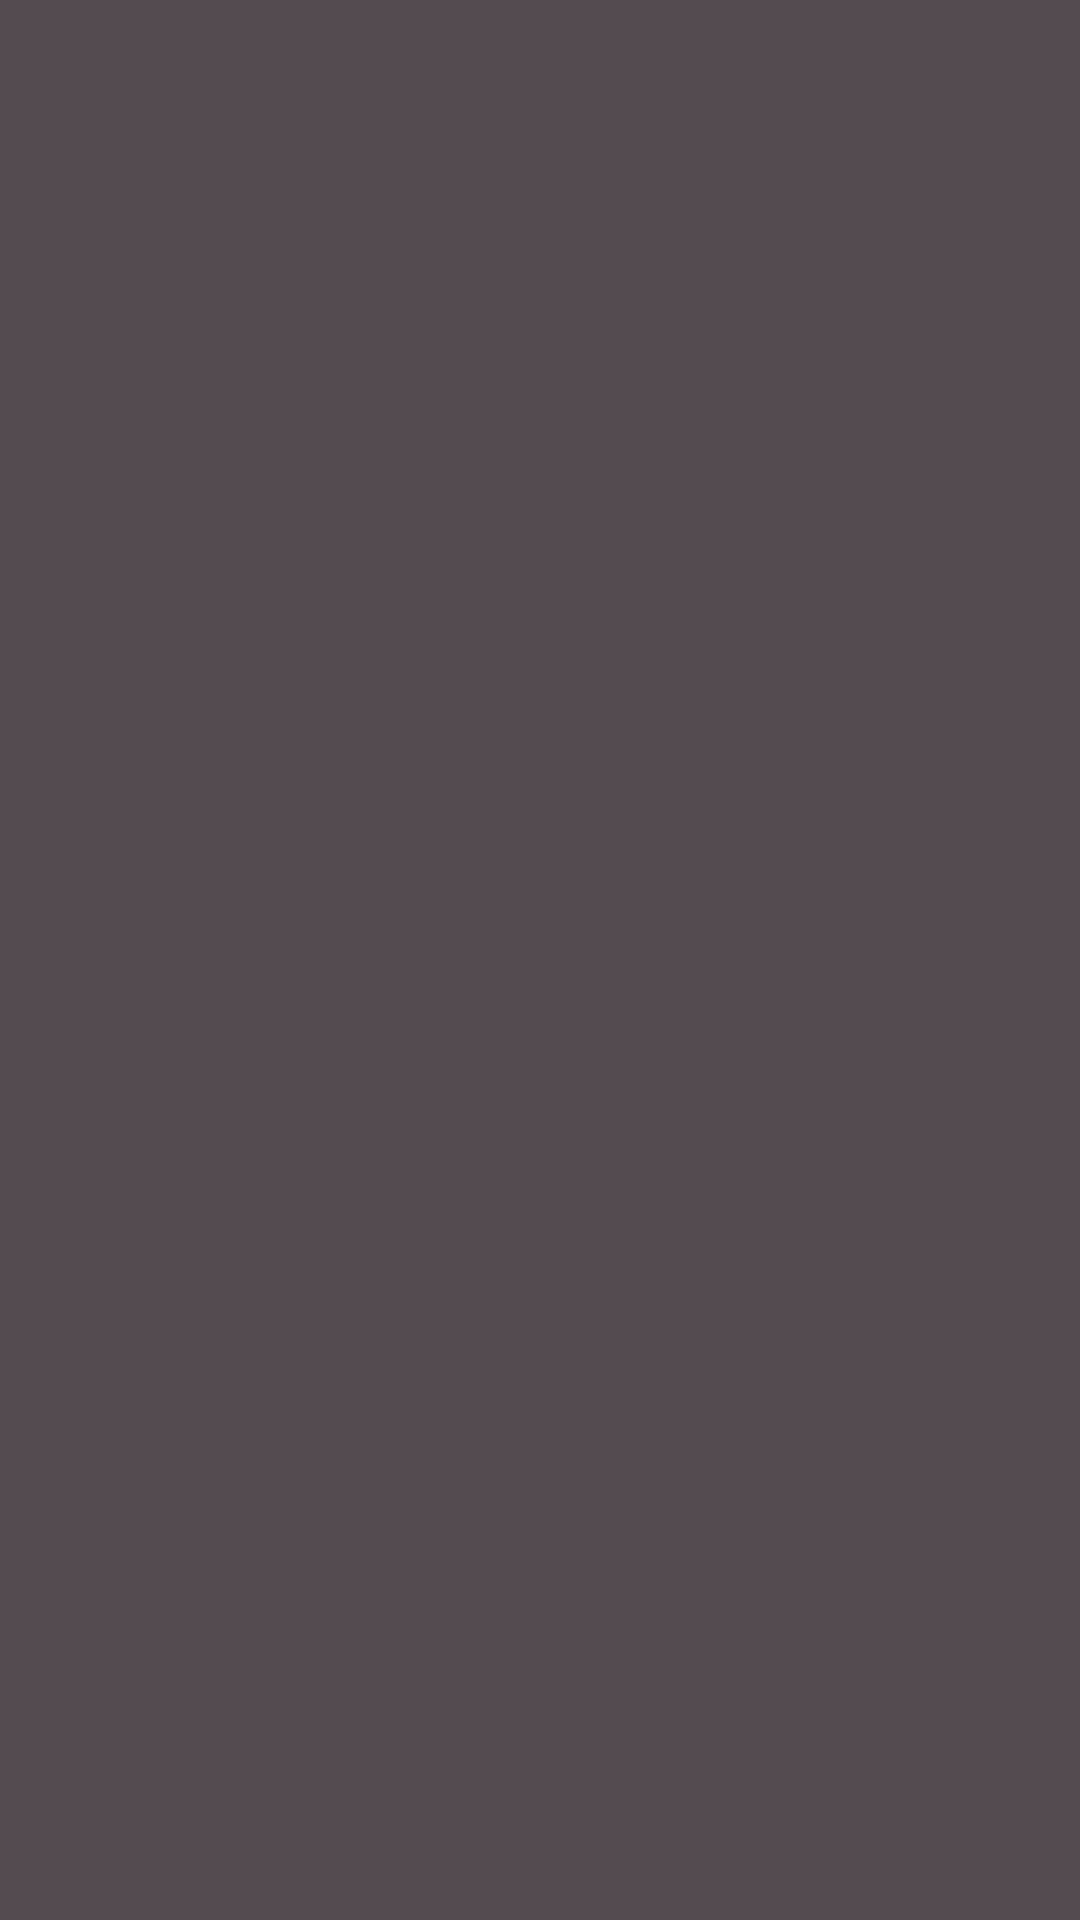 1080x1920 Dark Liver Solid Color Background